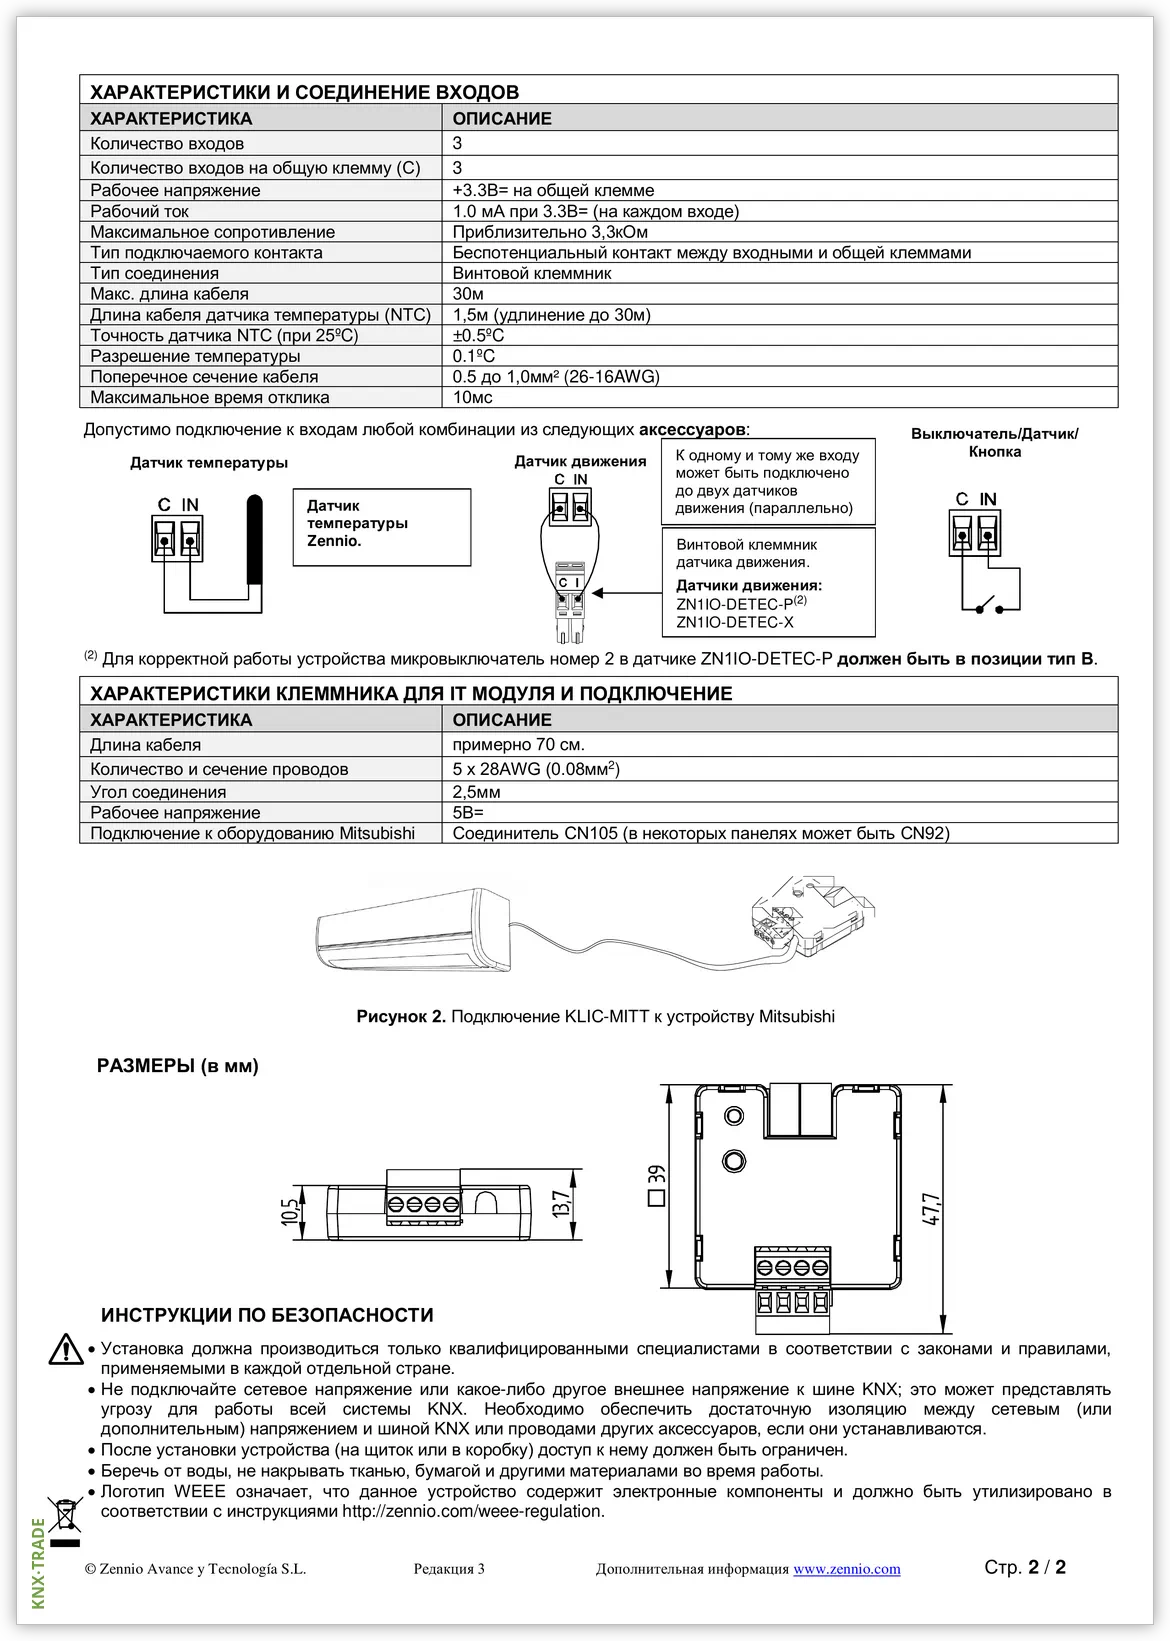 Datasheet (2) Zennio [ZCL-MITT] KLIC-MITT / Шлюз KNX-Mitsubishi Electric